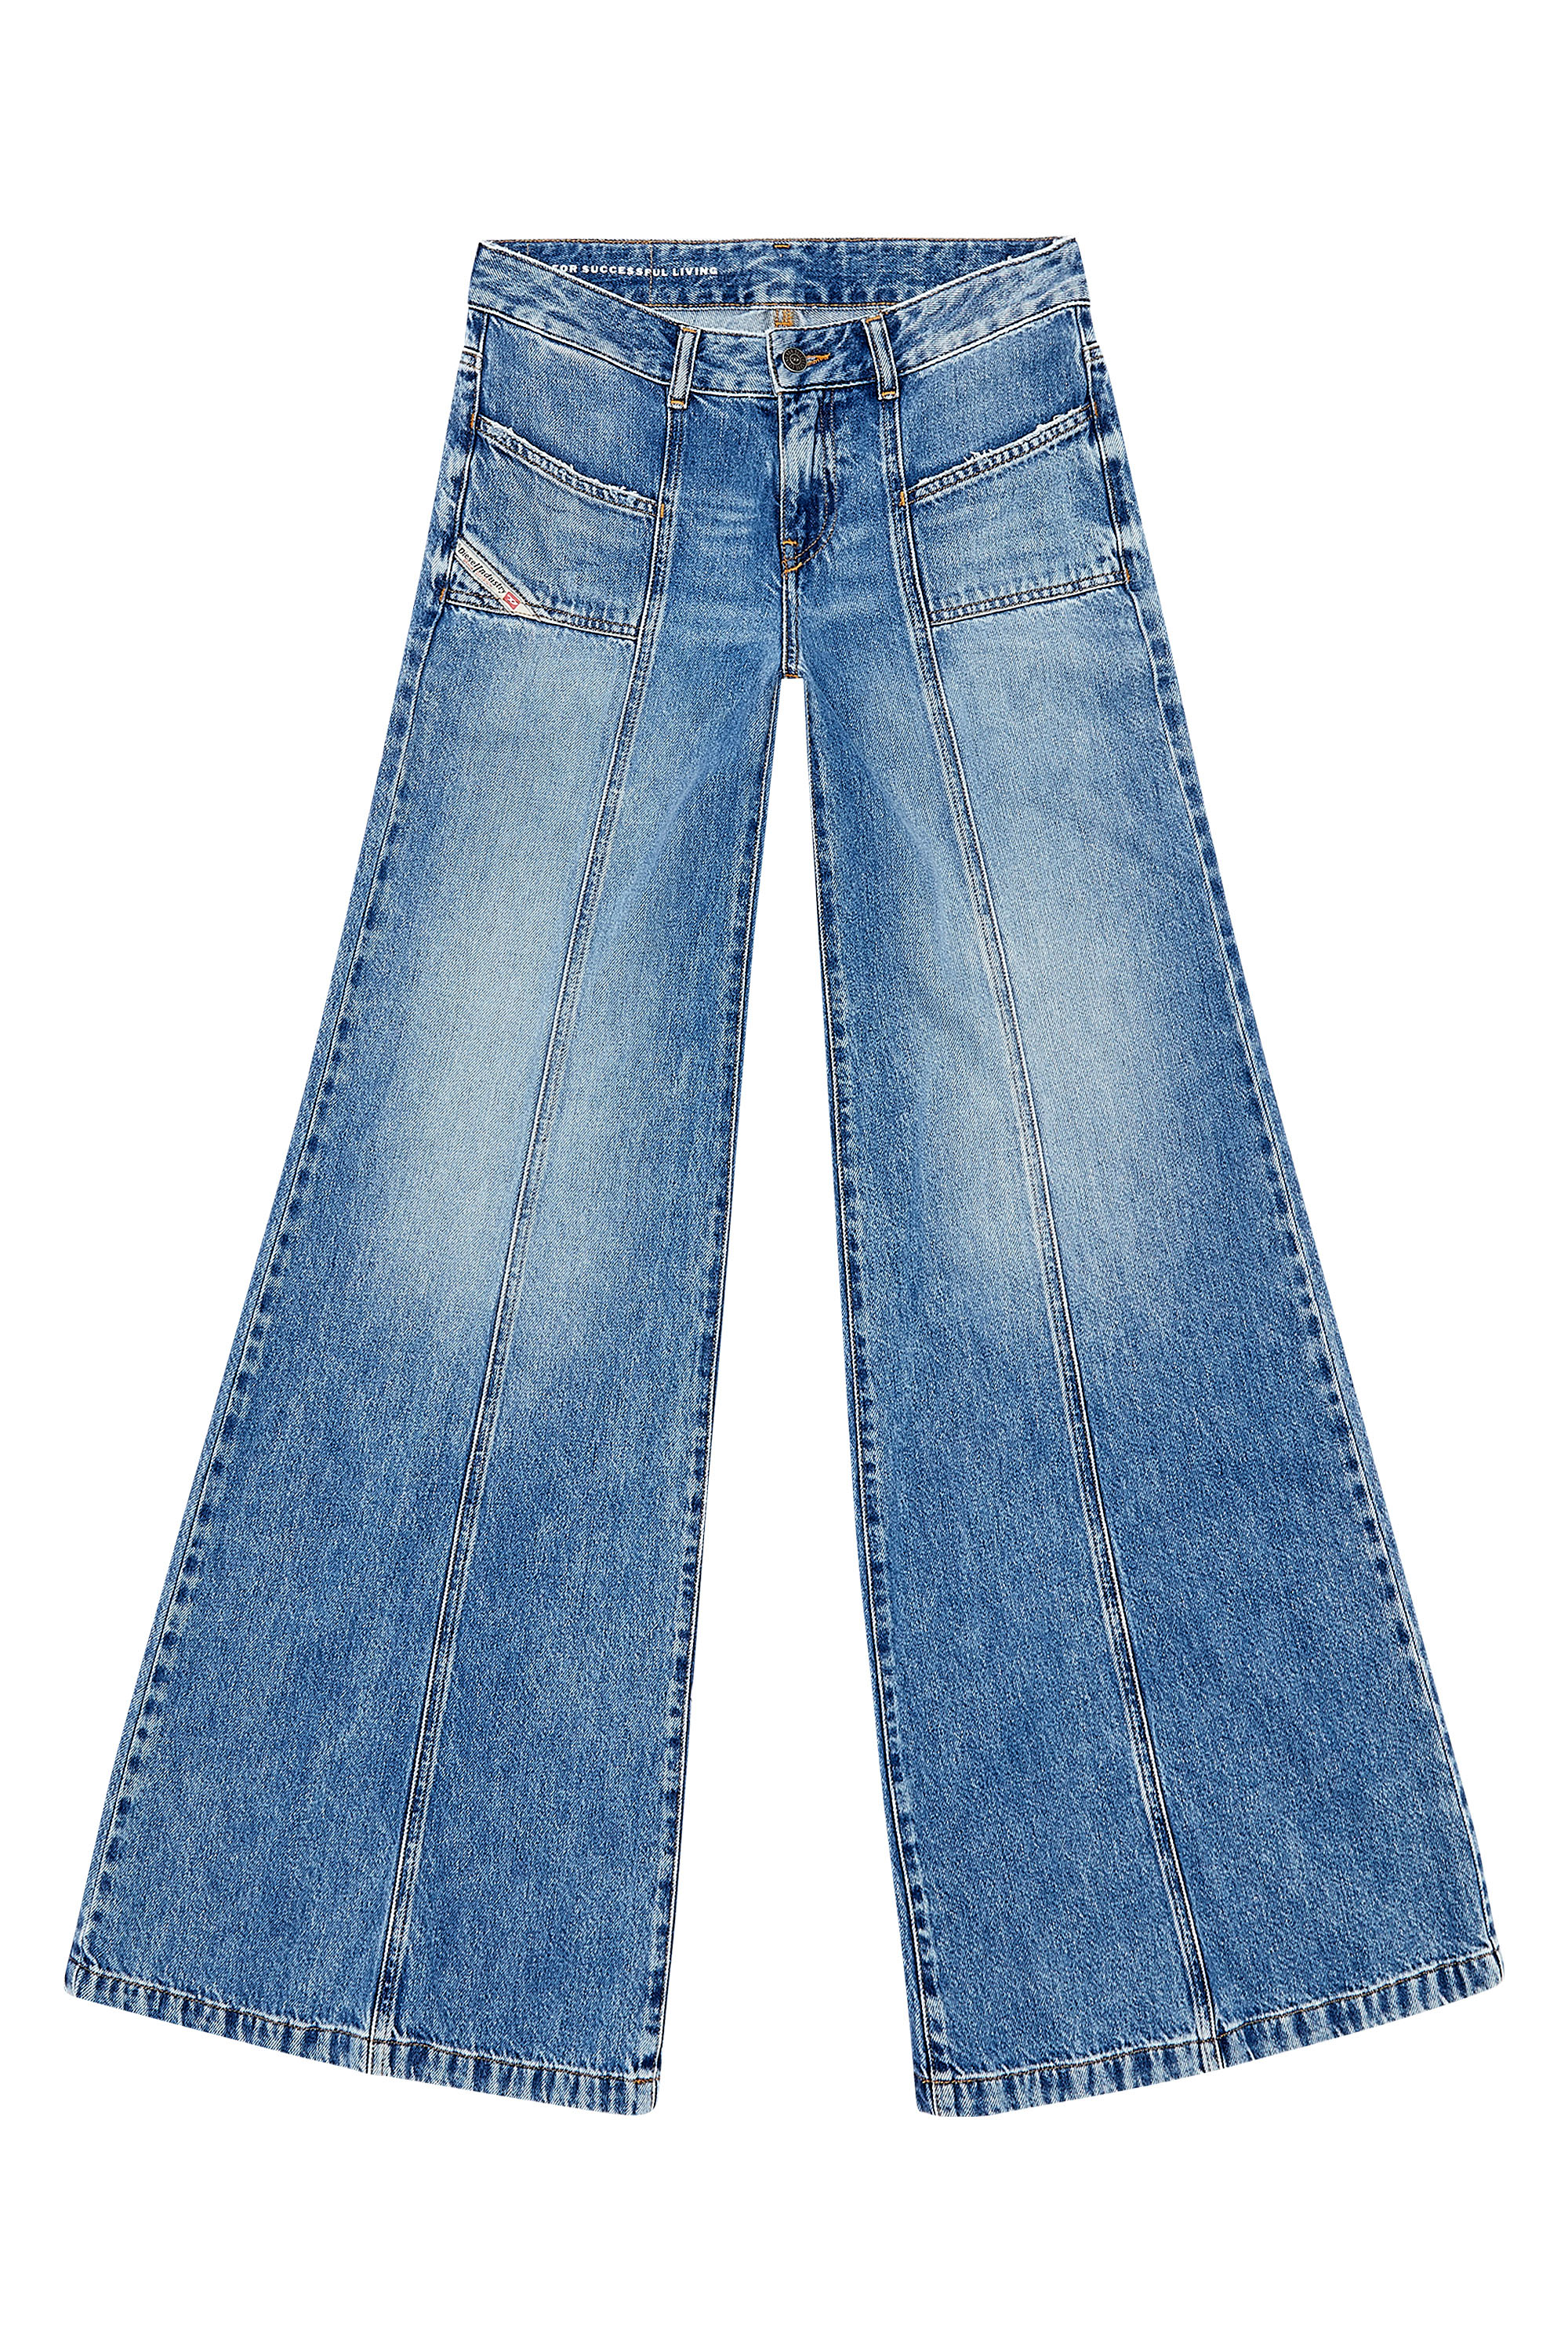 Buy DEVIS Dark Blue Womens Dark Blue Denim Bootcut Jeans